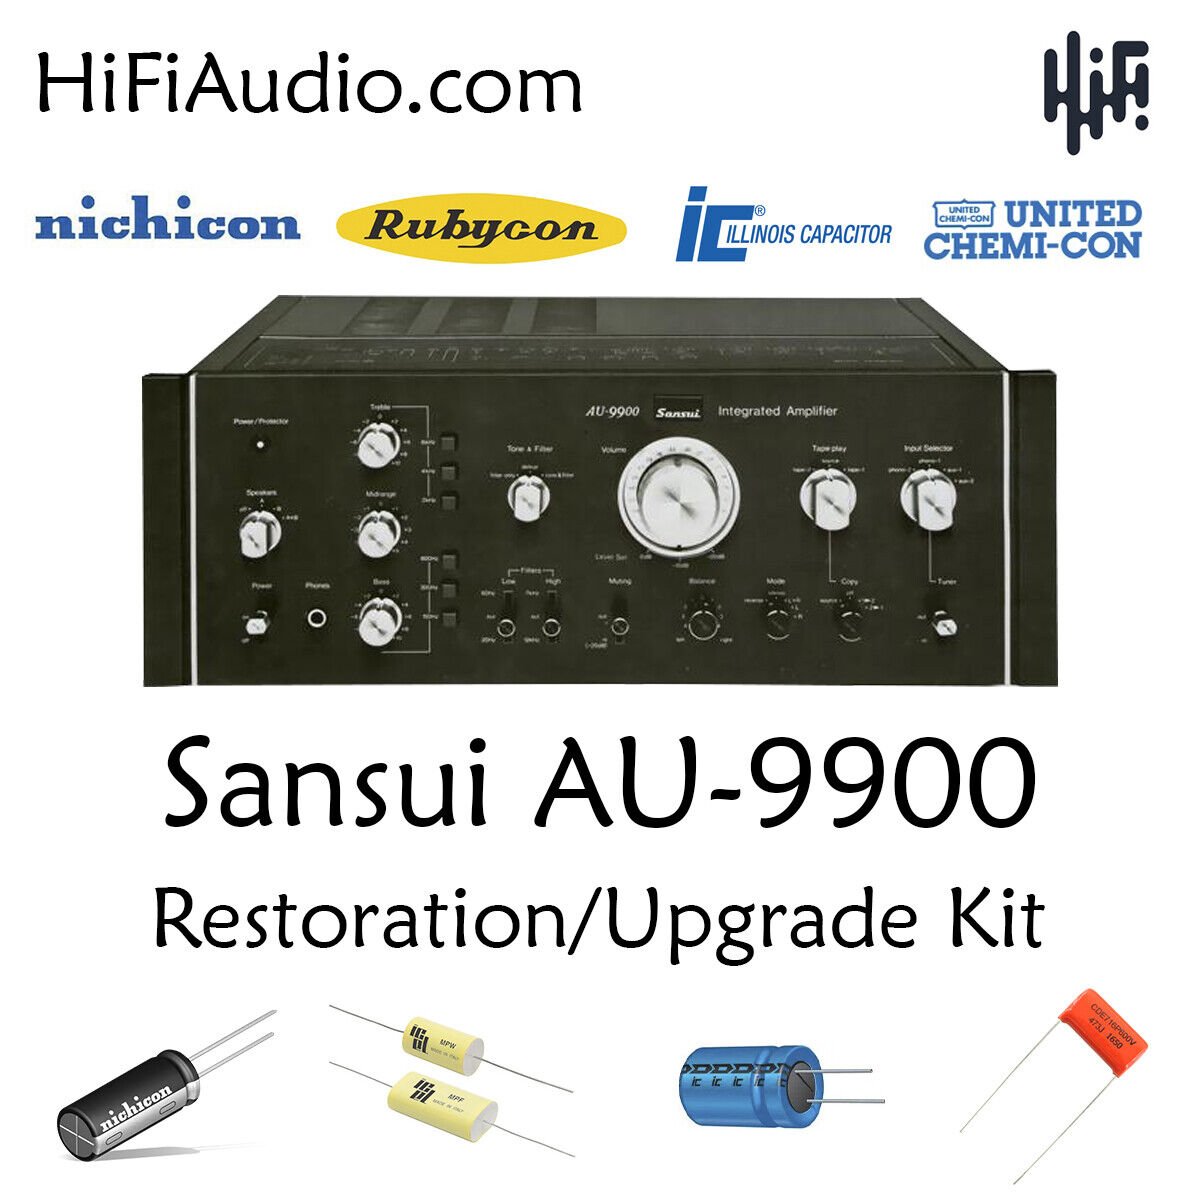 Buy Sansui AU-9900 restoration kit - HiFi Audio